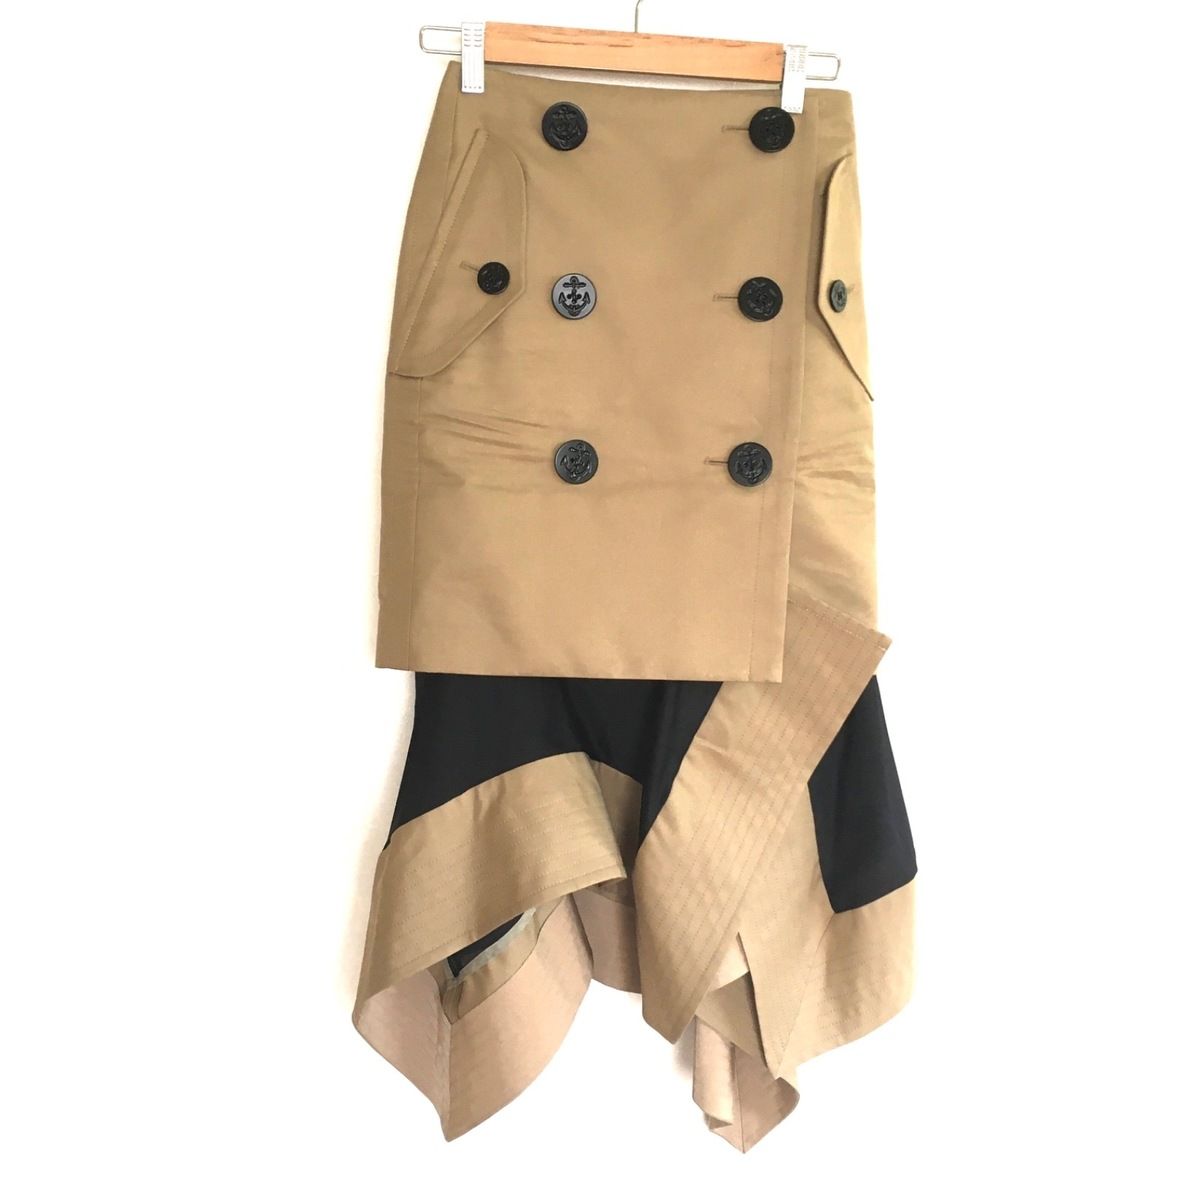 Sacai(サカイ) 巻きスカート サイズ0 XS レディース - 21-05855 ベージュ×黒 ロング - メルカリ